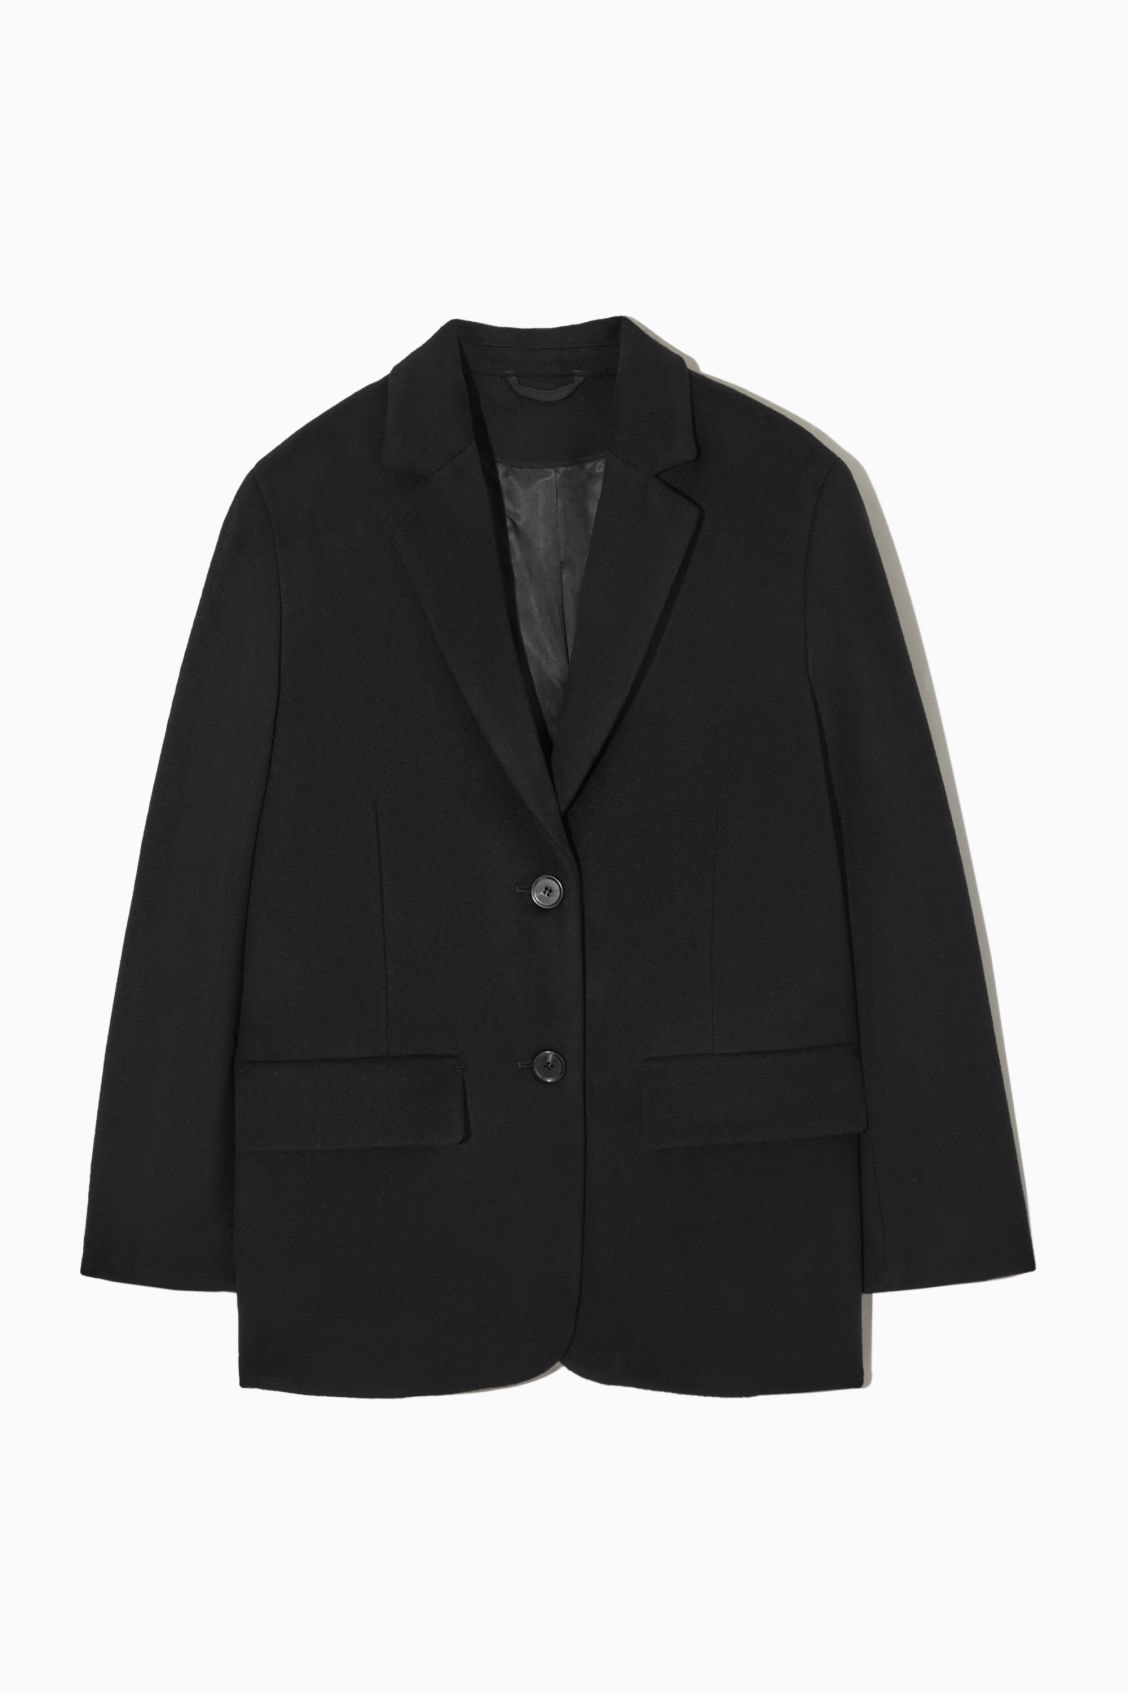 Chaqueta negra de traje, de Arket (159 euros)